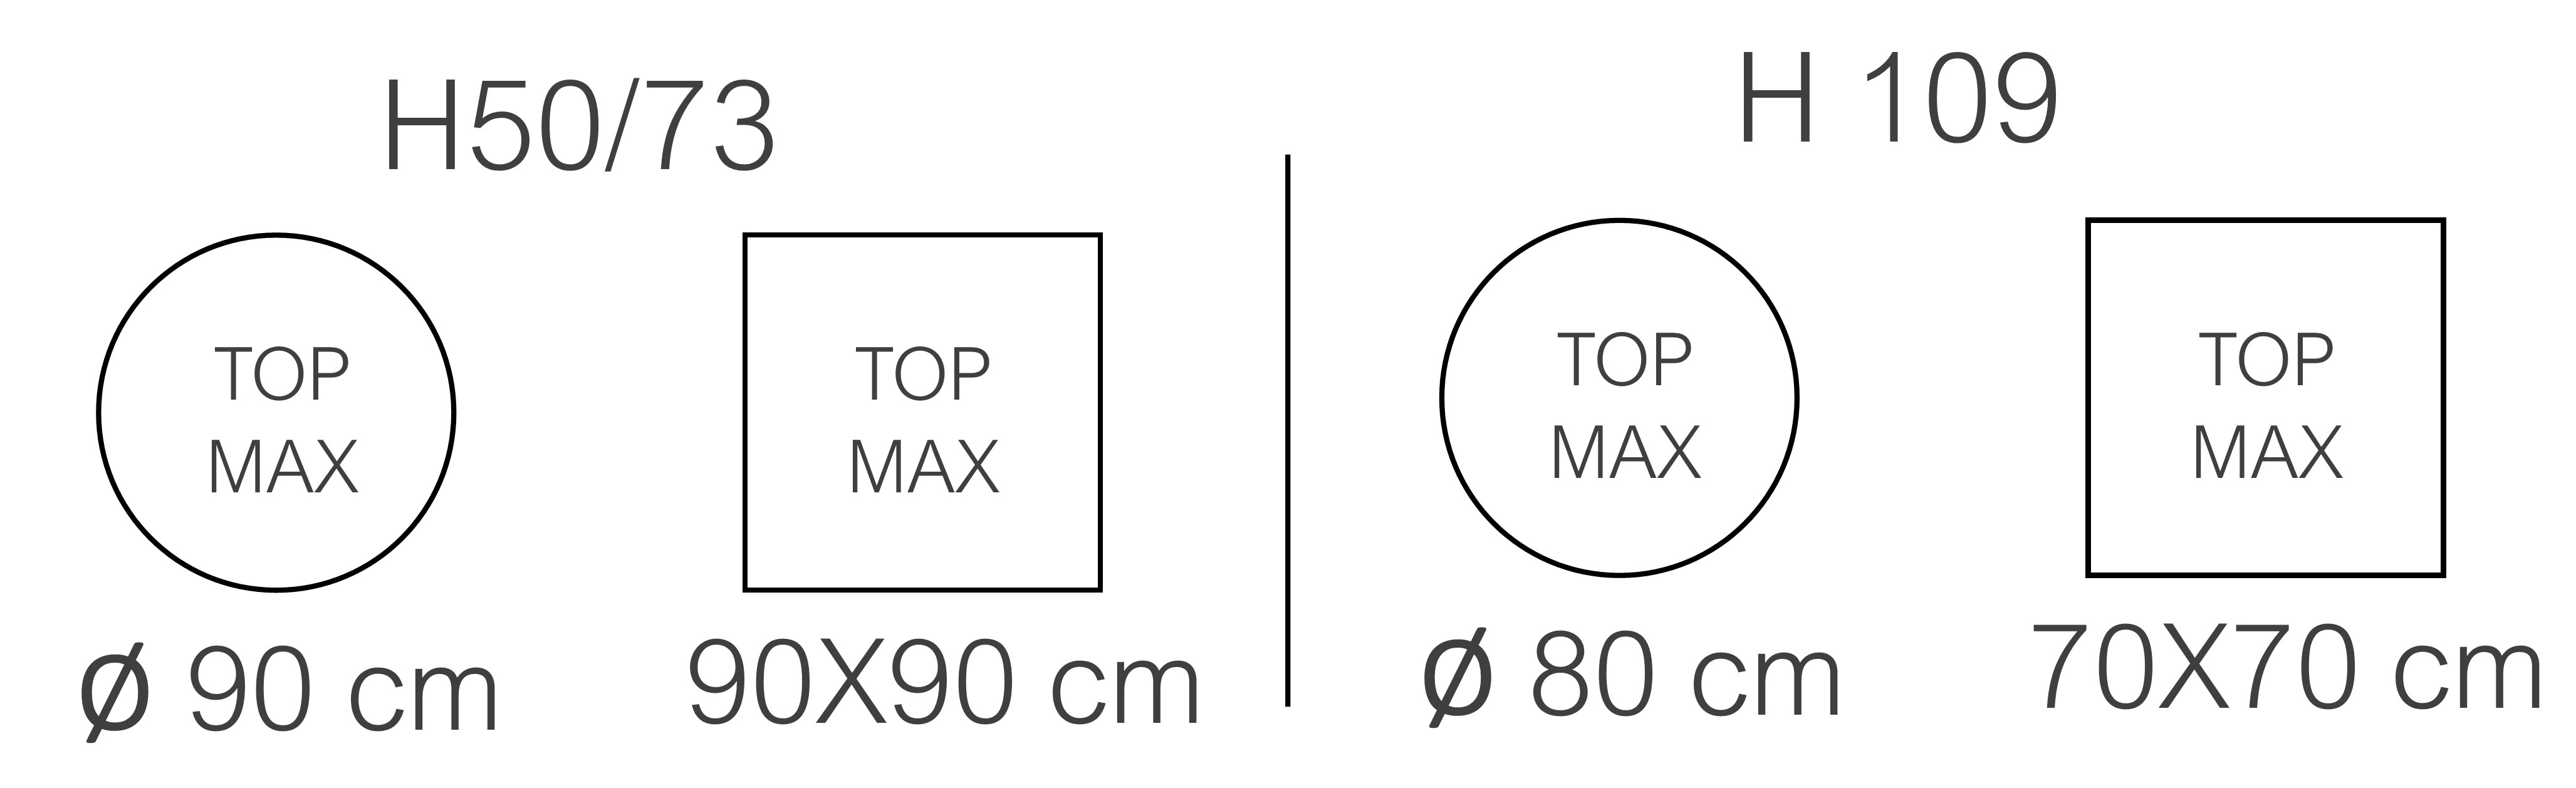 MAX TOP COLONNA 80.jpg